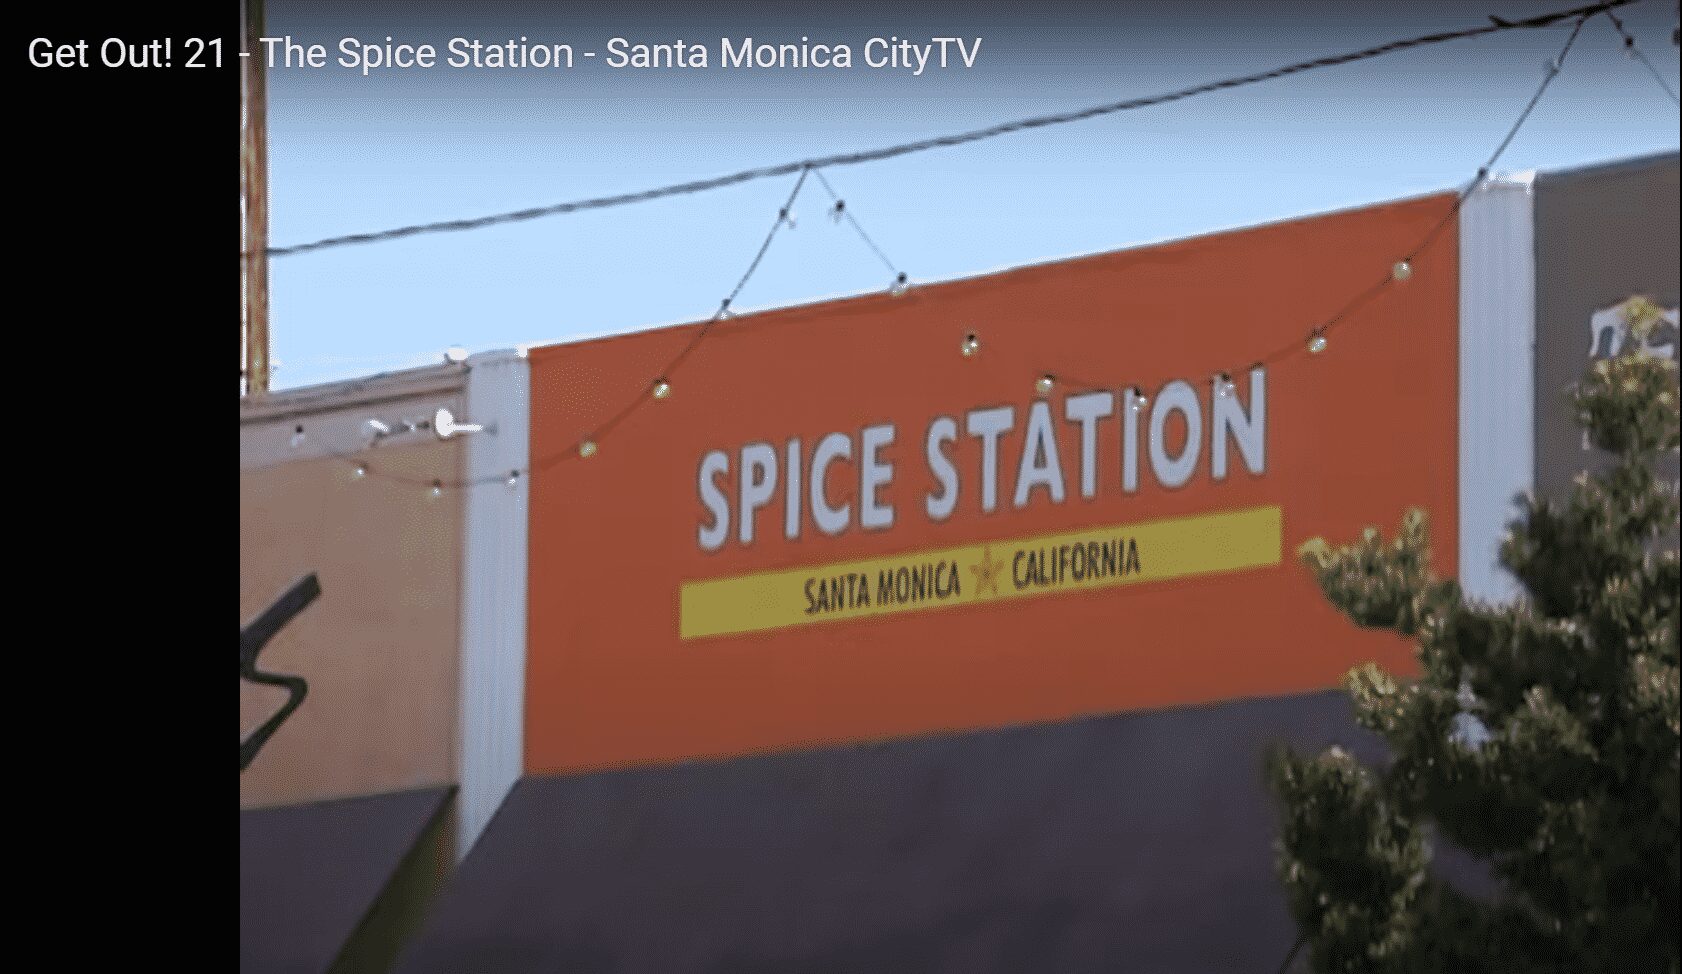 Spice Station on TV